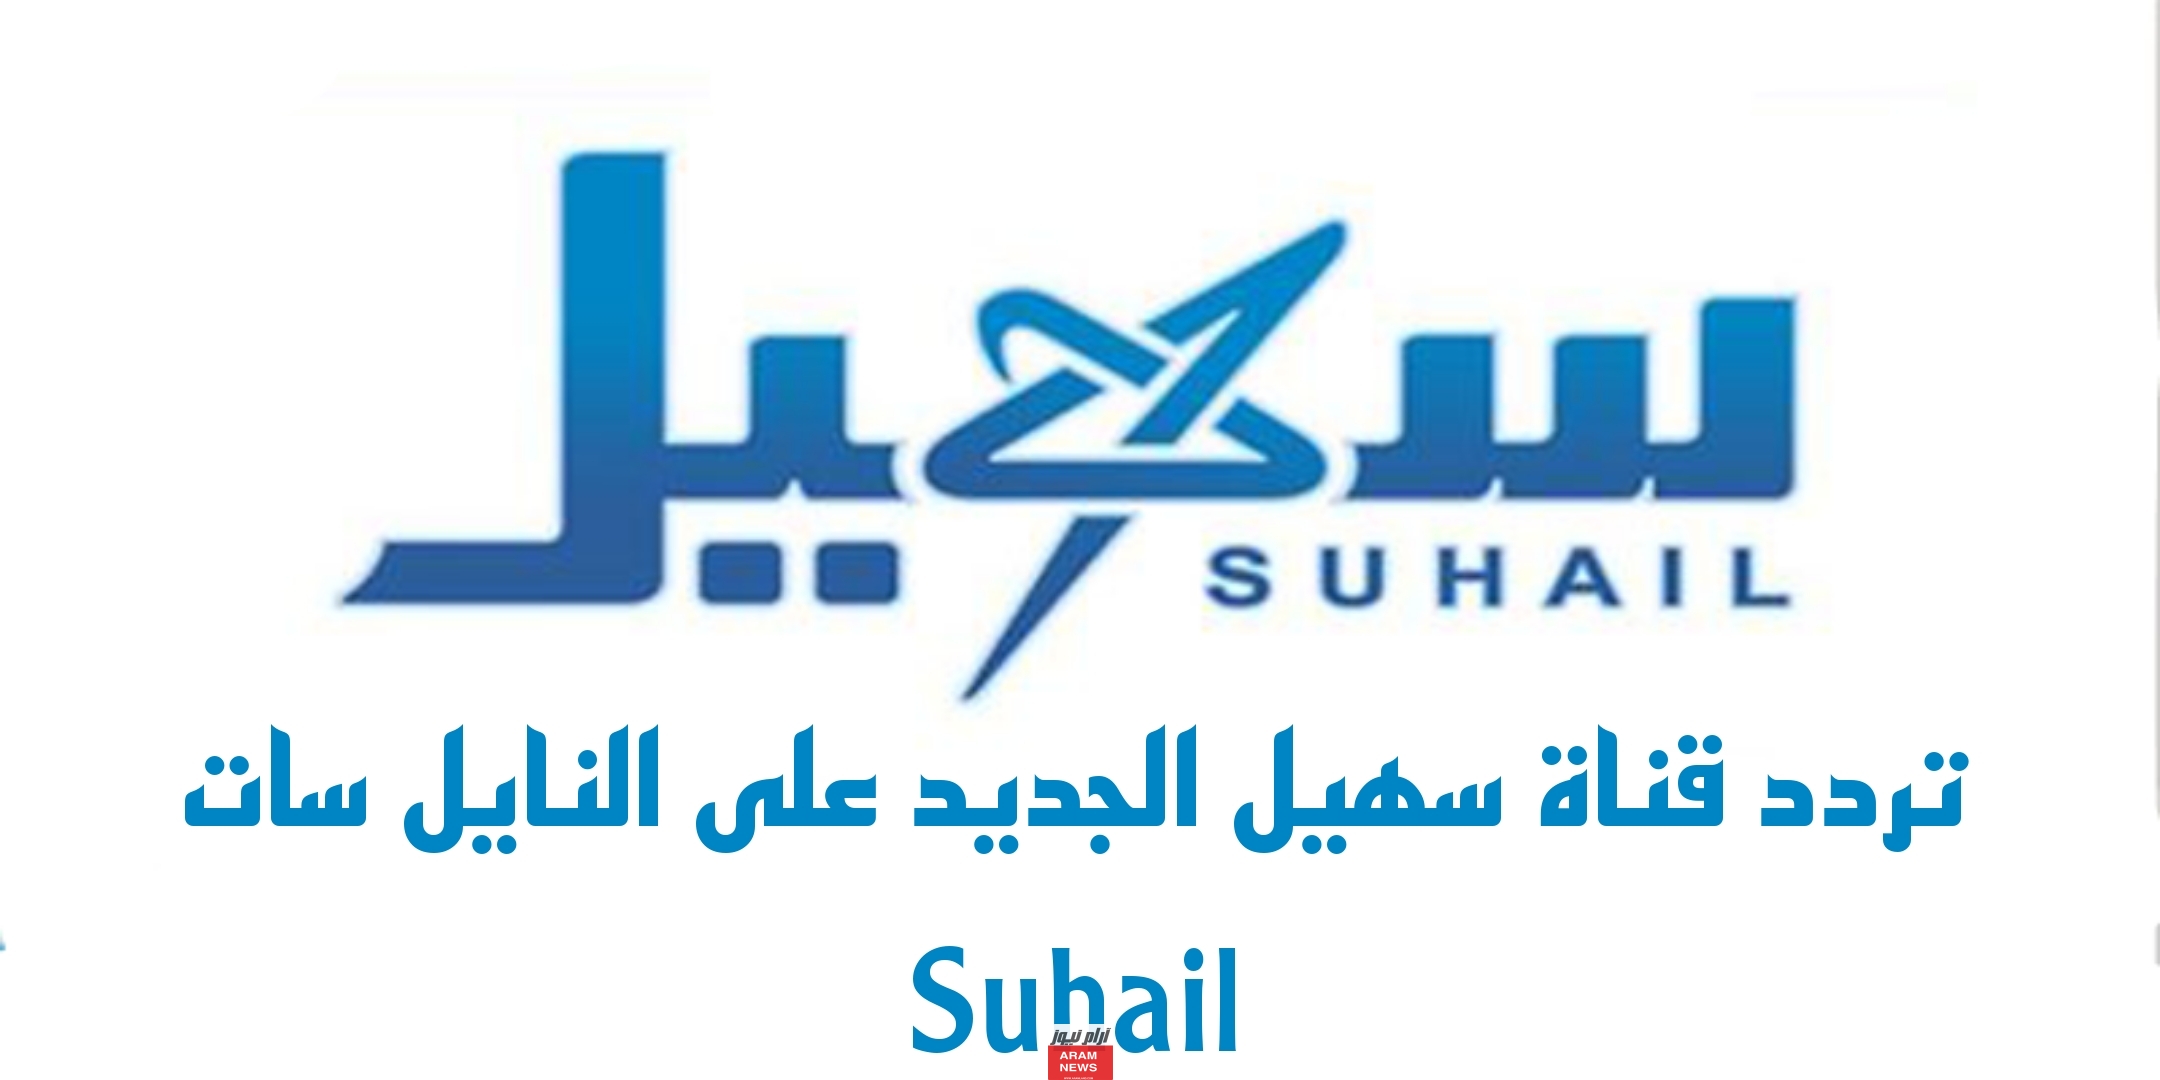 تردد قناة سهيل الجديد على النايل سات Suhail